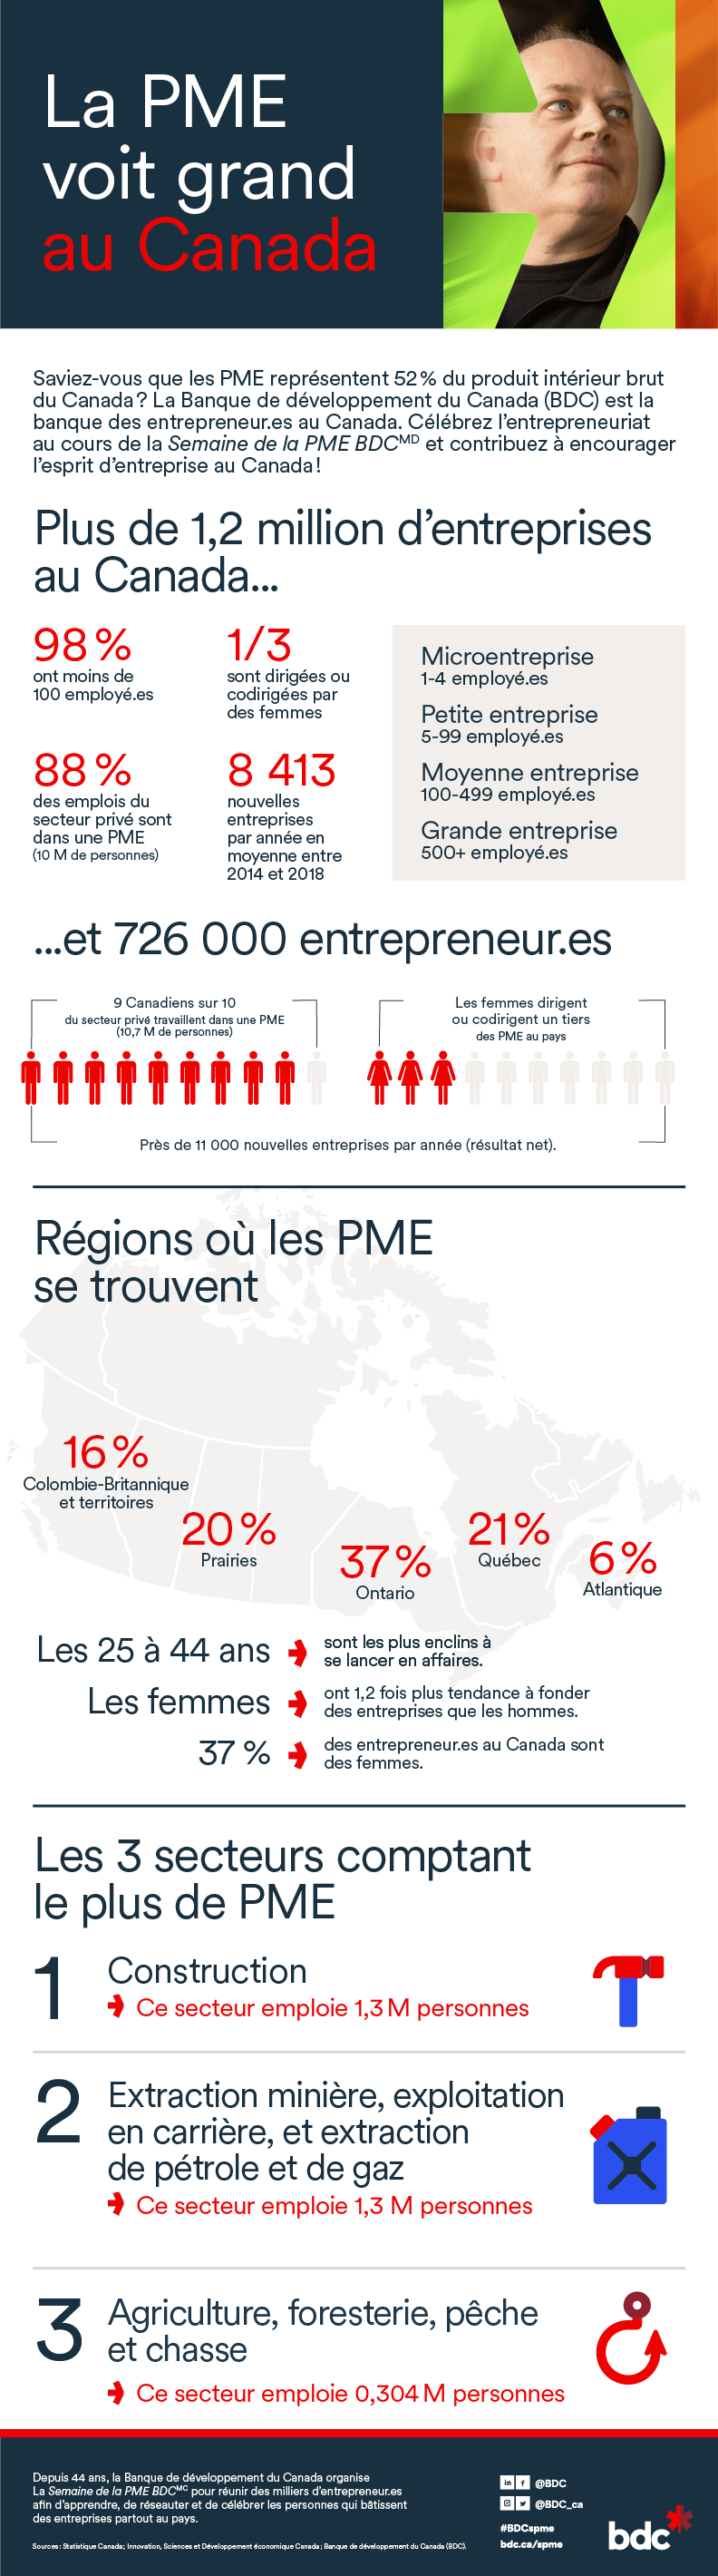 infographie sur les PME au Canada